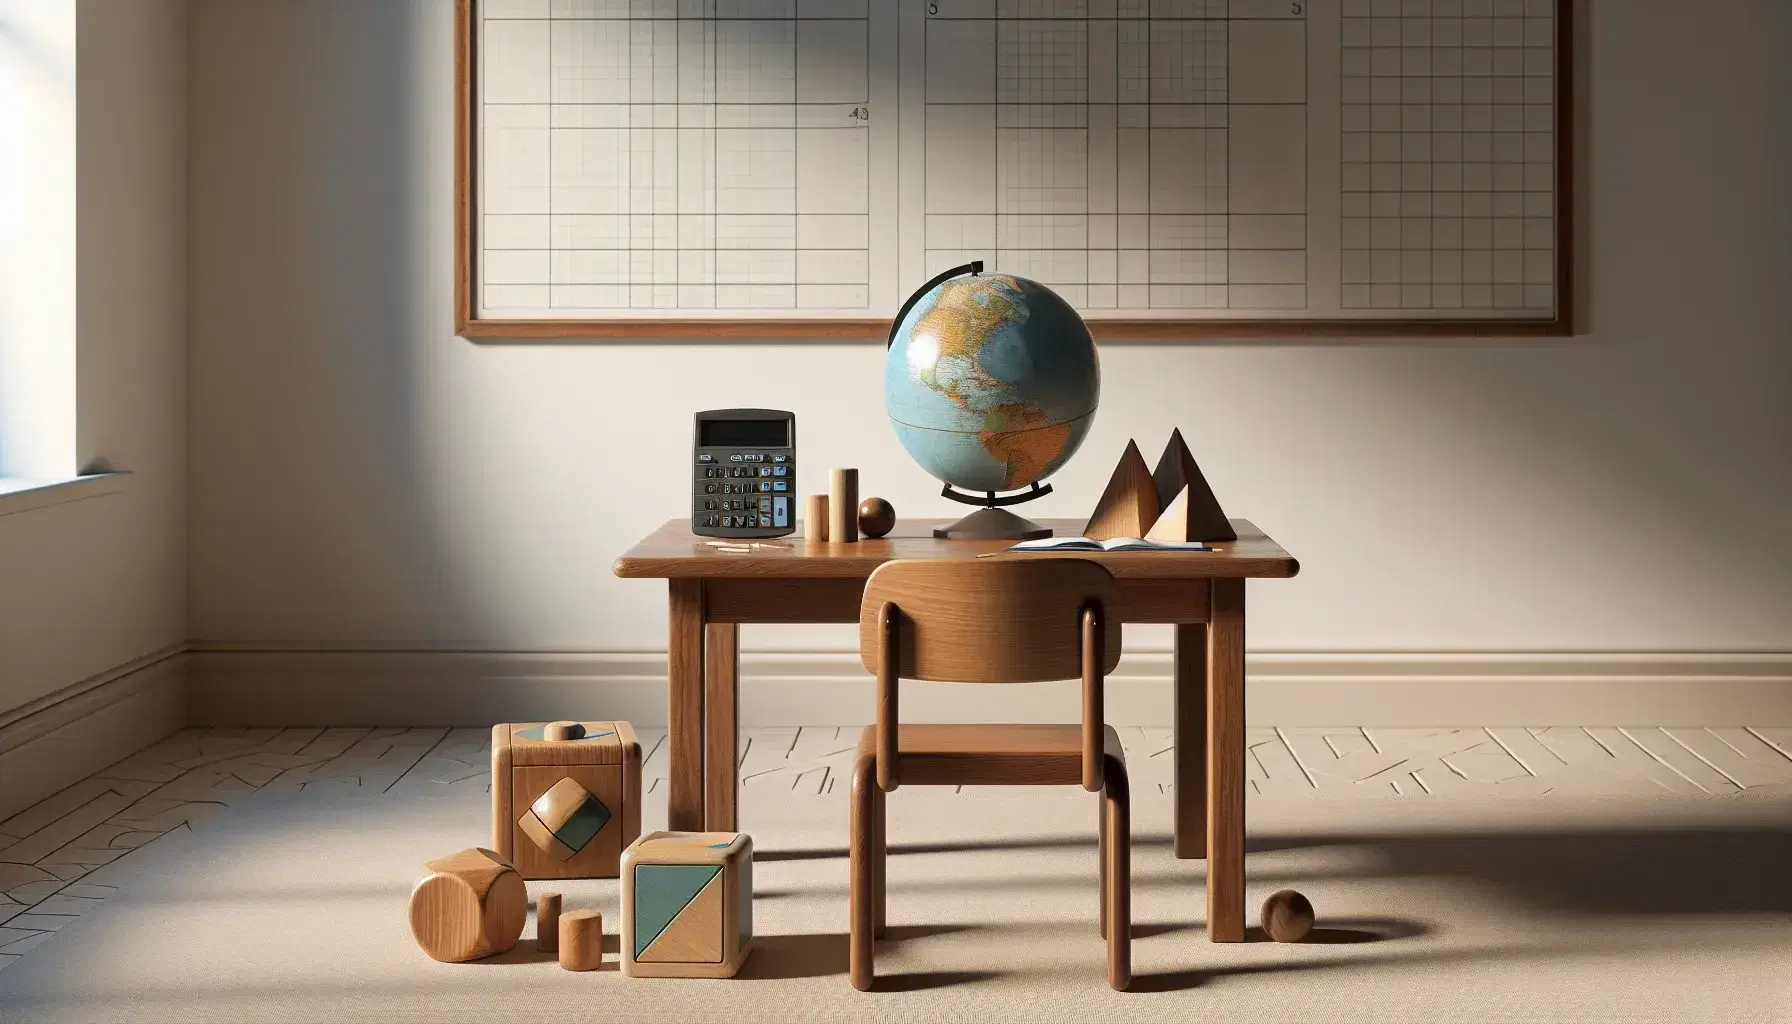 Aula con mesa de madera y objetos educativos como un globo terráqueo y bloques geométricos, junto a una silla con cojín azul y pizarra blanca al fondo.